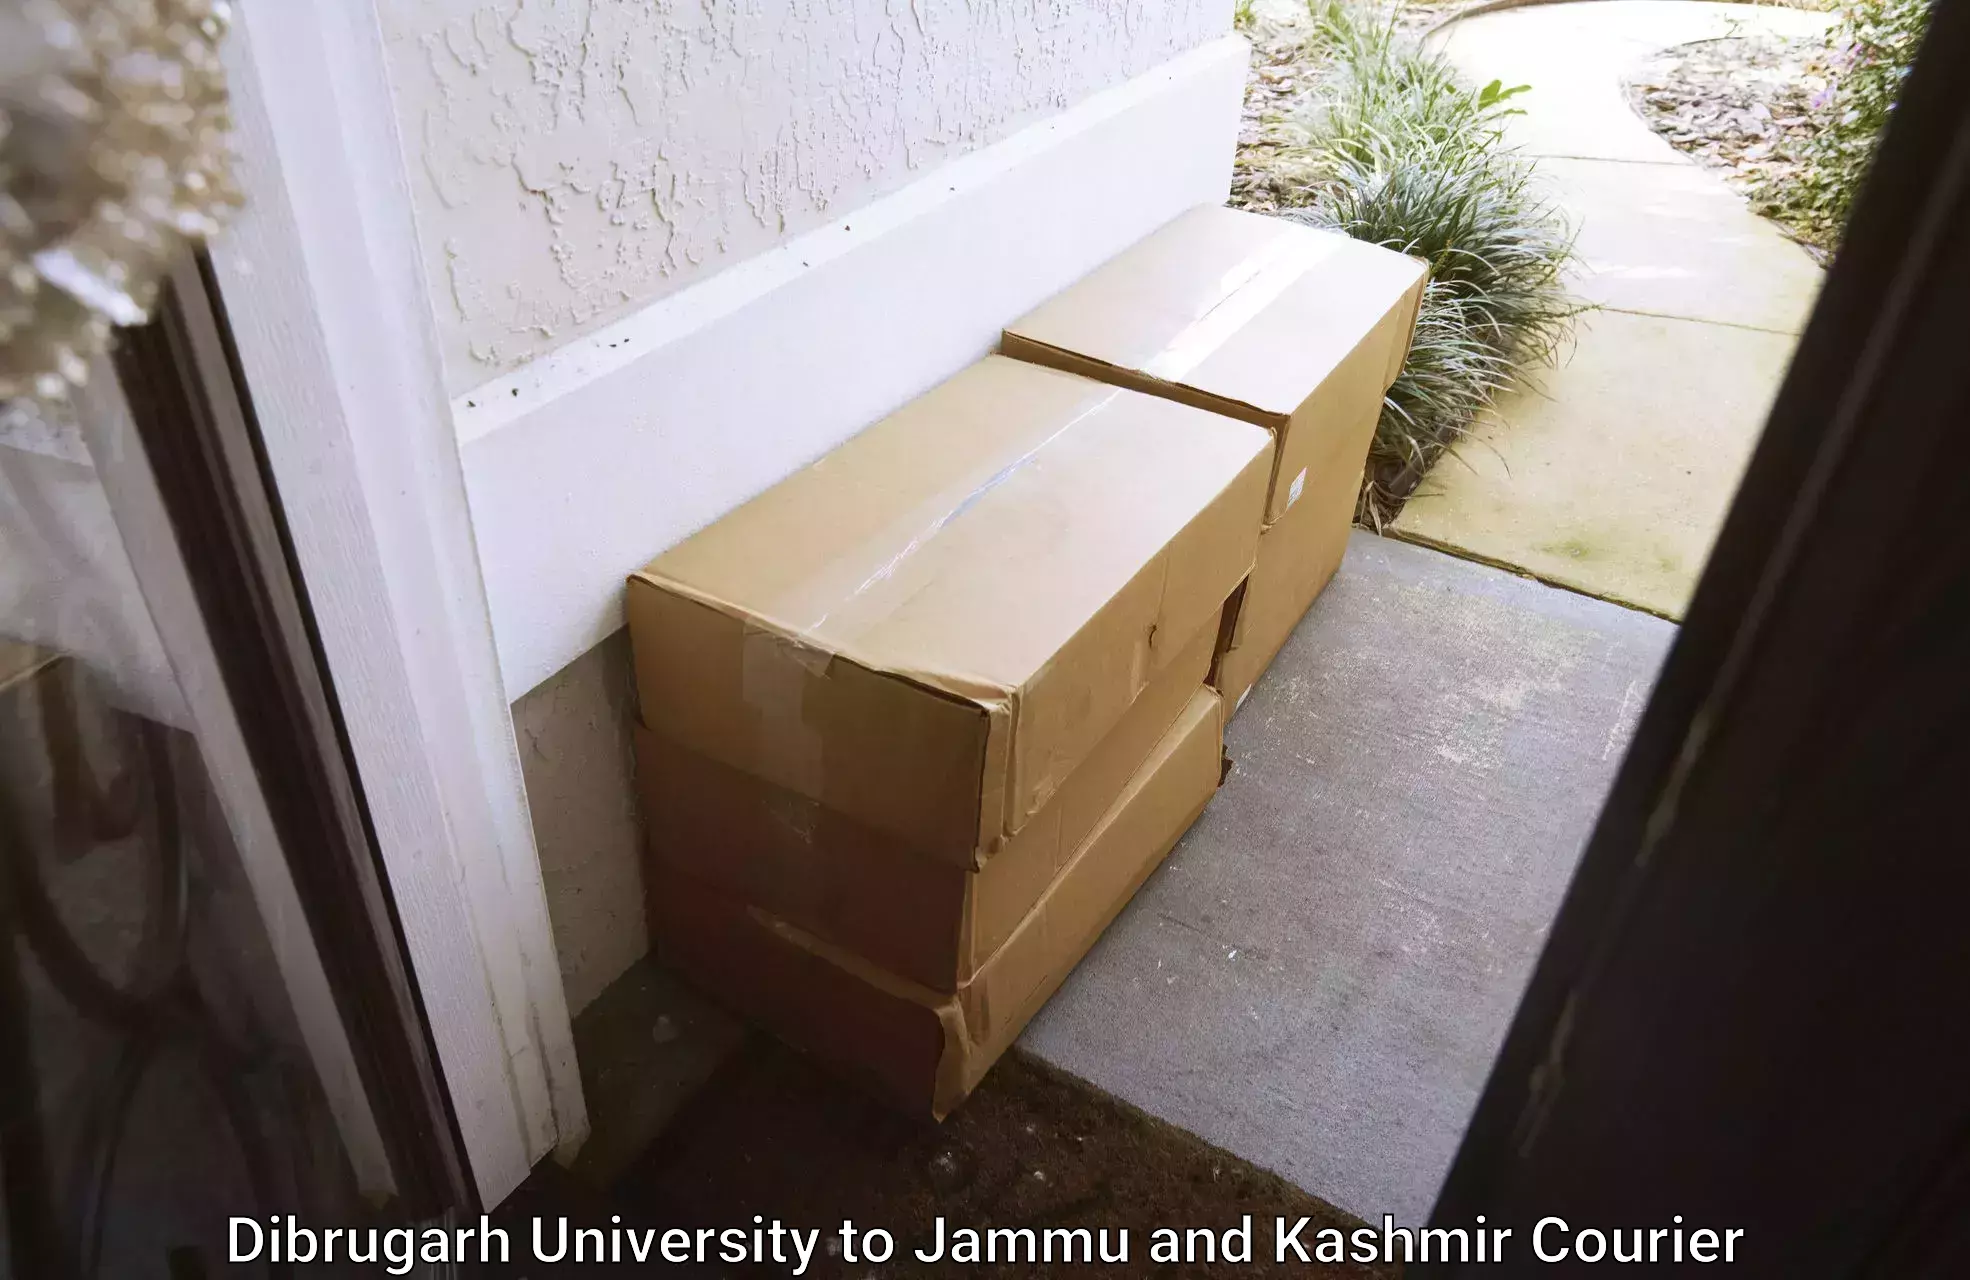 Door to door delivery Dibrugarh University to University of Kashmir Srinagar